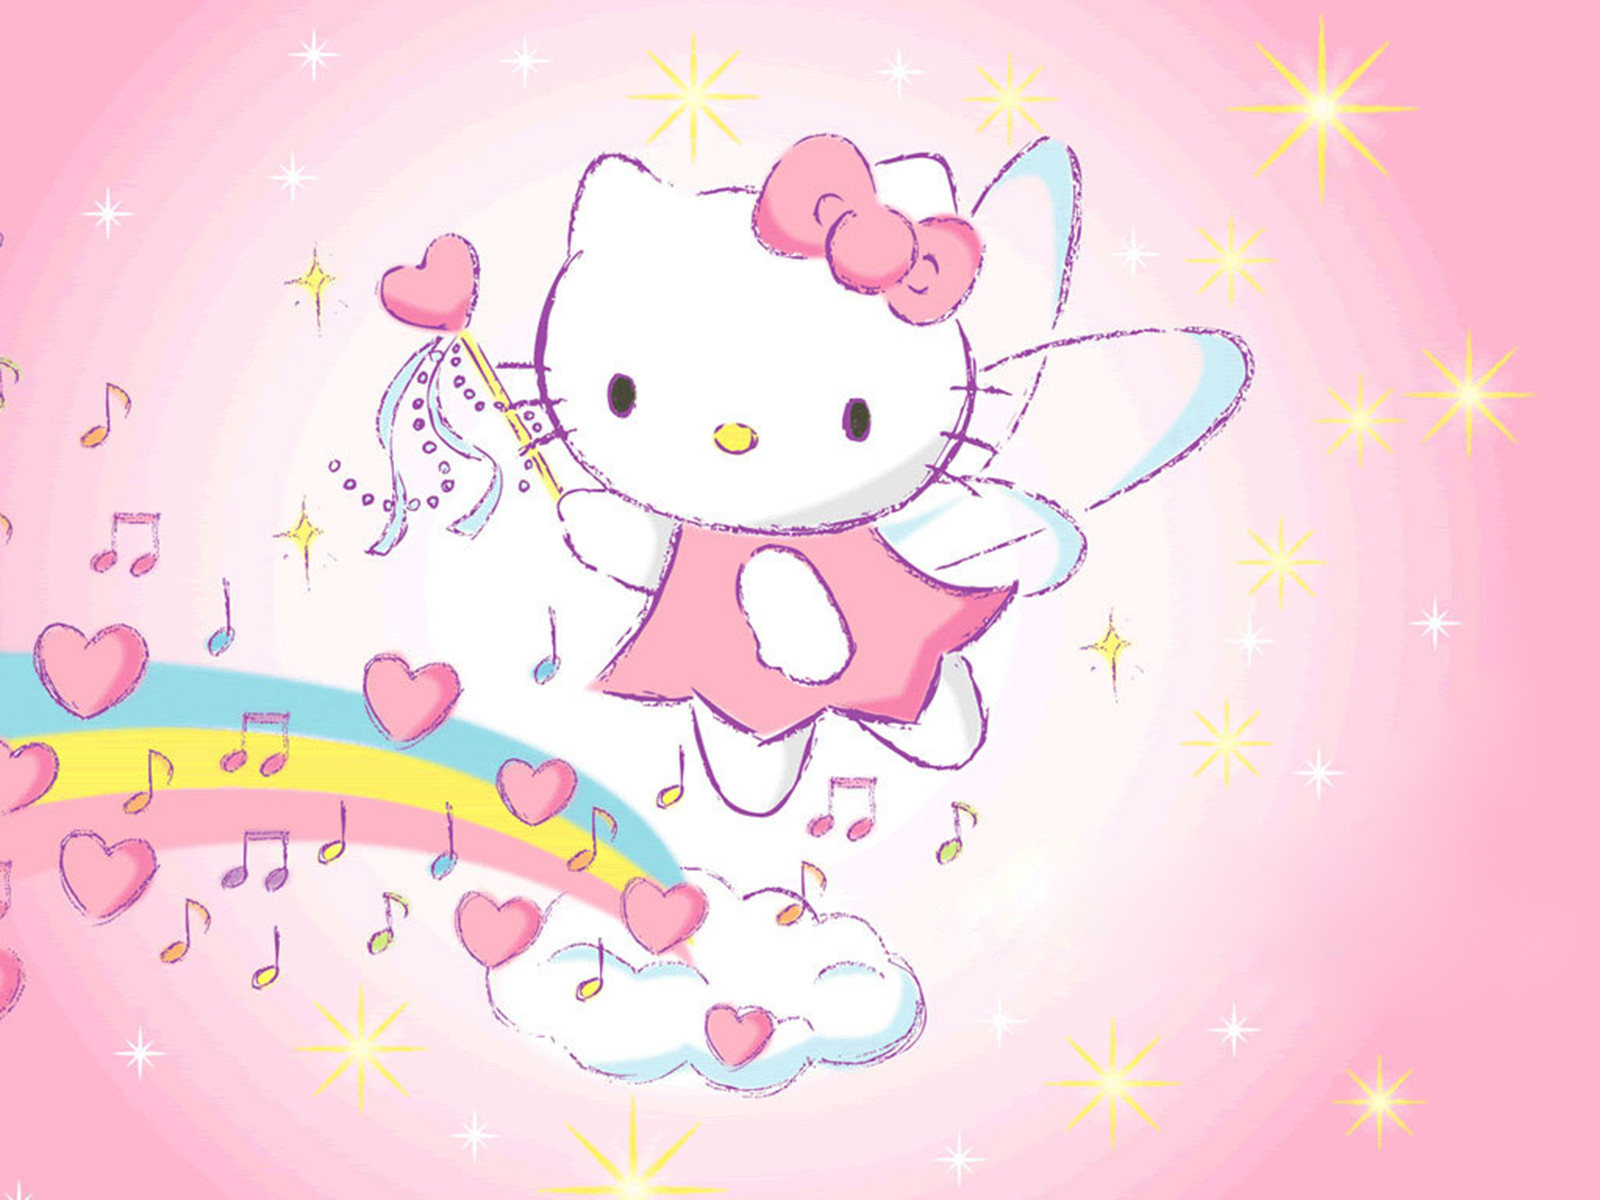 Hình nền Hello Kitty: Với chú mèo Hello Kitty đáng yêu và dễ thương, bạn sẽ không thể chối từ loạt hình nền xinh xắn này. Tuy giản dị nhưng sự dễ thương và ngọt ngào của những hình nền này sẽ làm cho bạn cảm thấy vô cùng thoải mái và thư giãn.